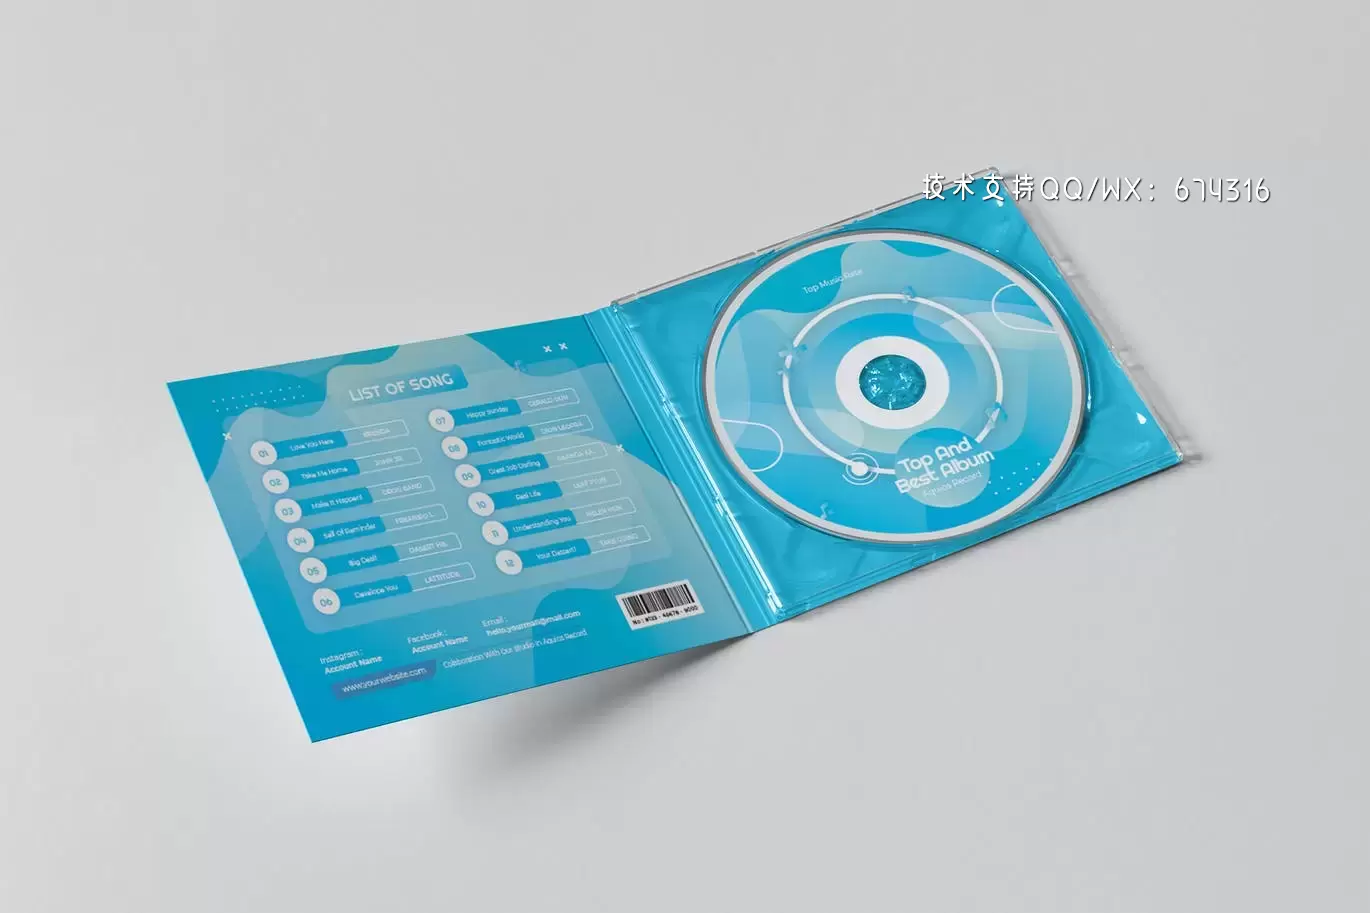 高品质的CD光盘包装设计VI样机展示模型mockups免费下载插图